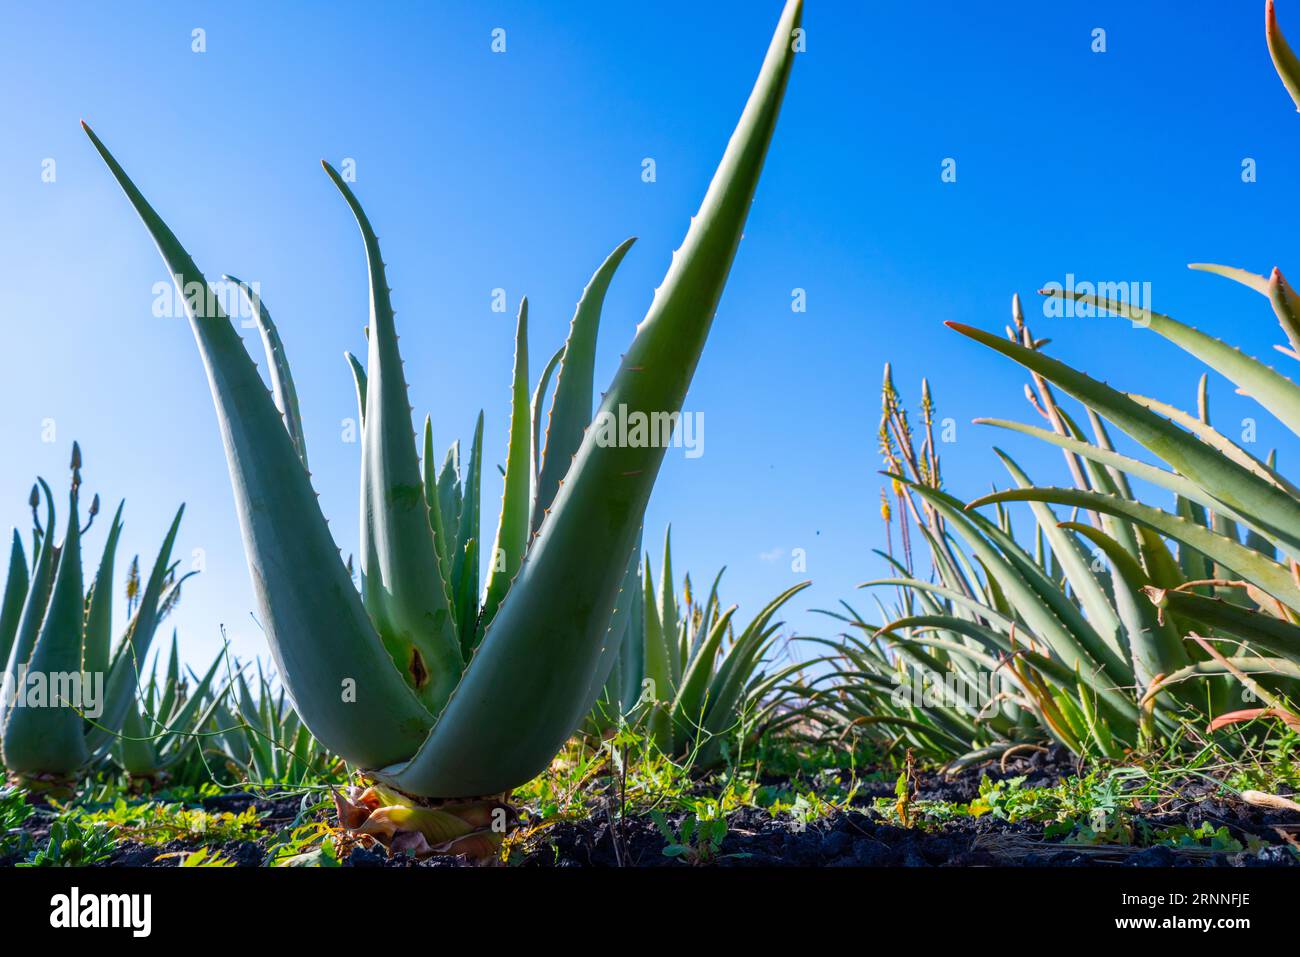 Gros plan d'une plante d'Aloe Vera. La plante a des feuilles épaisses et charnues qui sont disposées dans une rosette. Les feuilles sont vertes avec des taches blanches, et ils h Banque D'Images